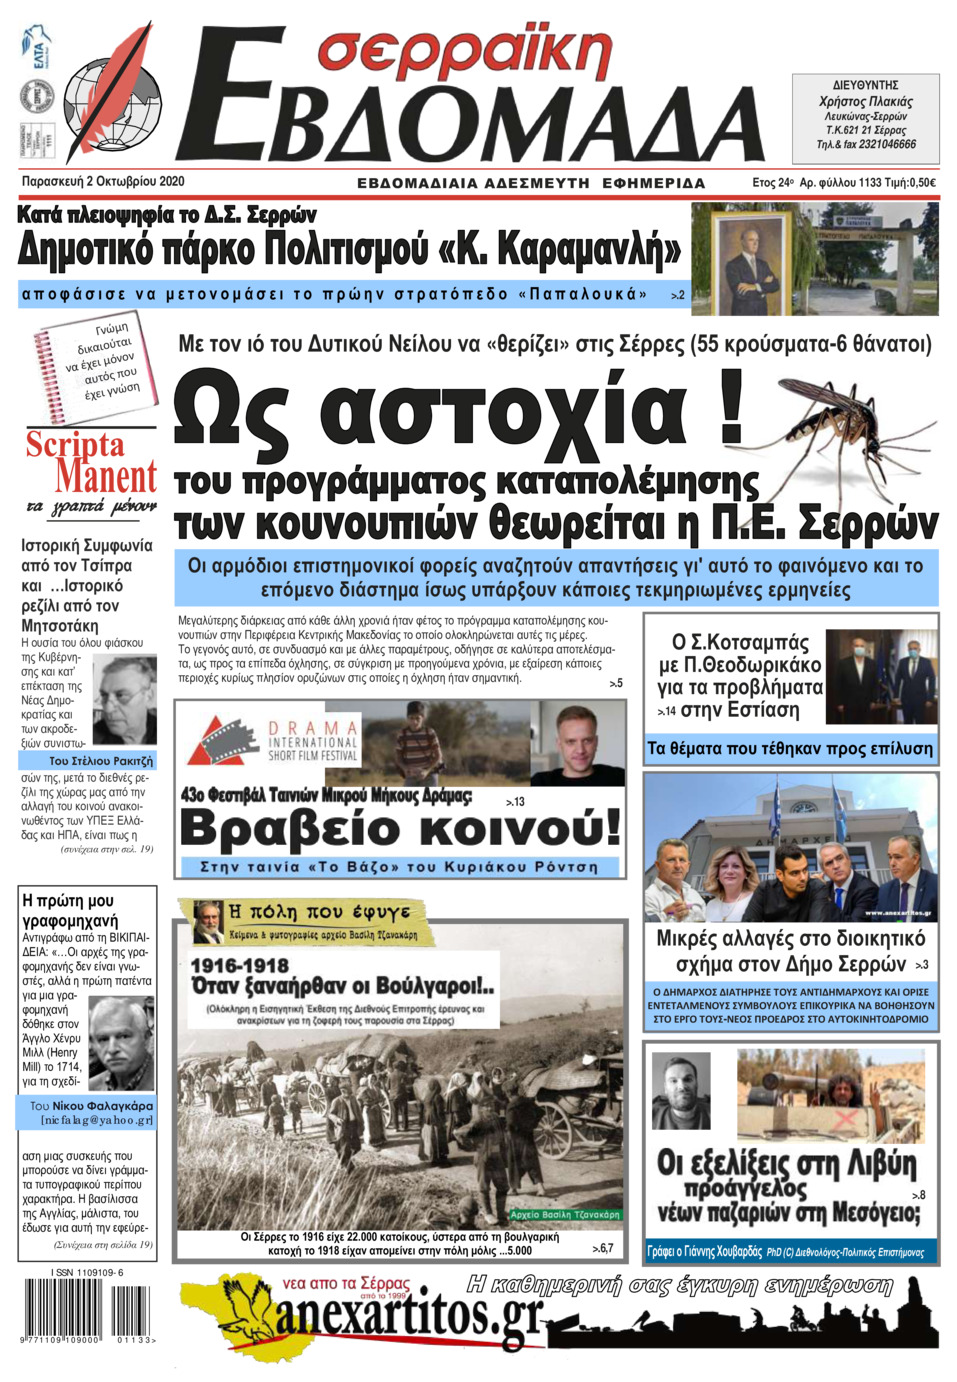 Πρωτοσέλιδο εφημερίδας Σερραϊκή Εβδομάδα